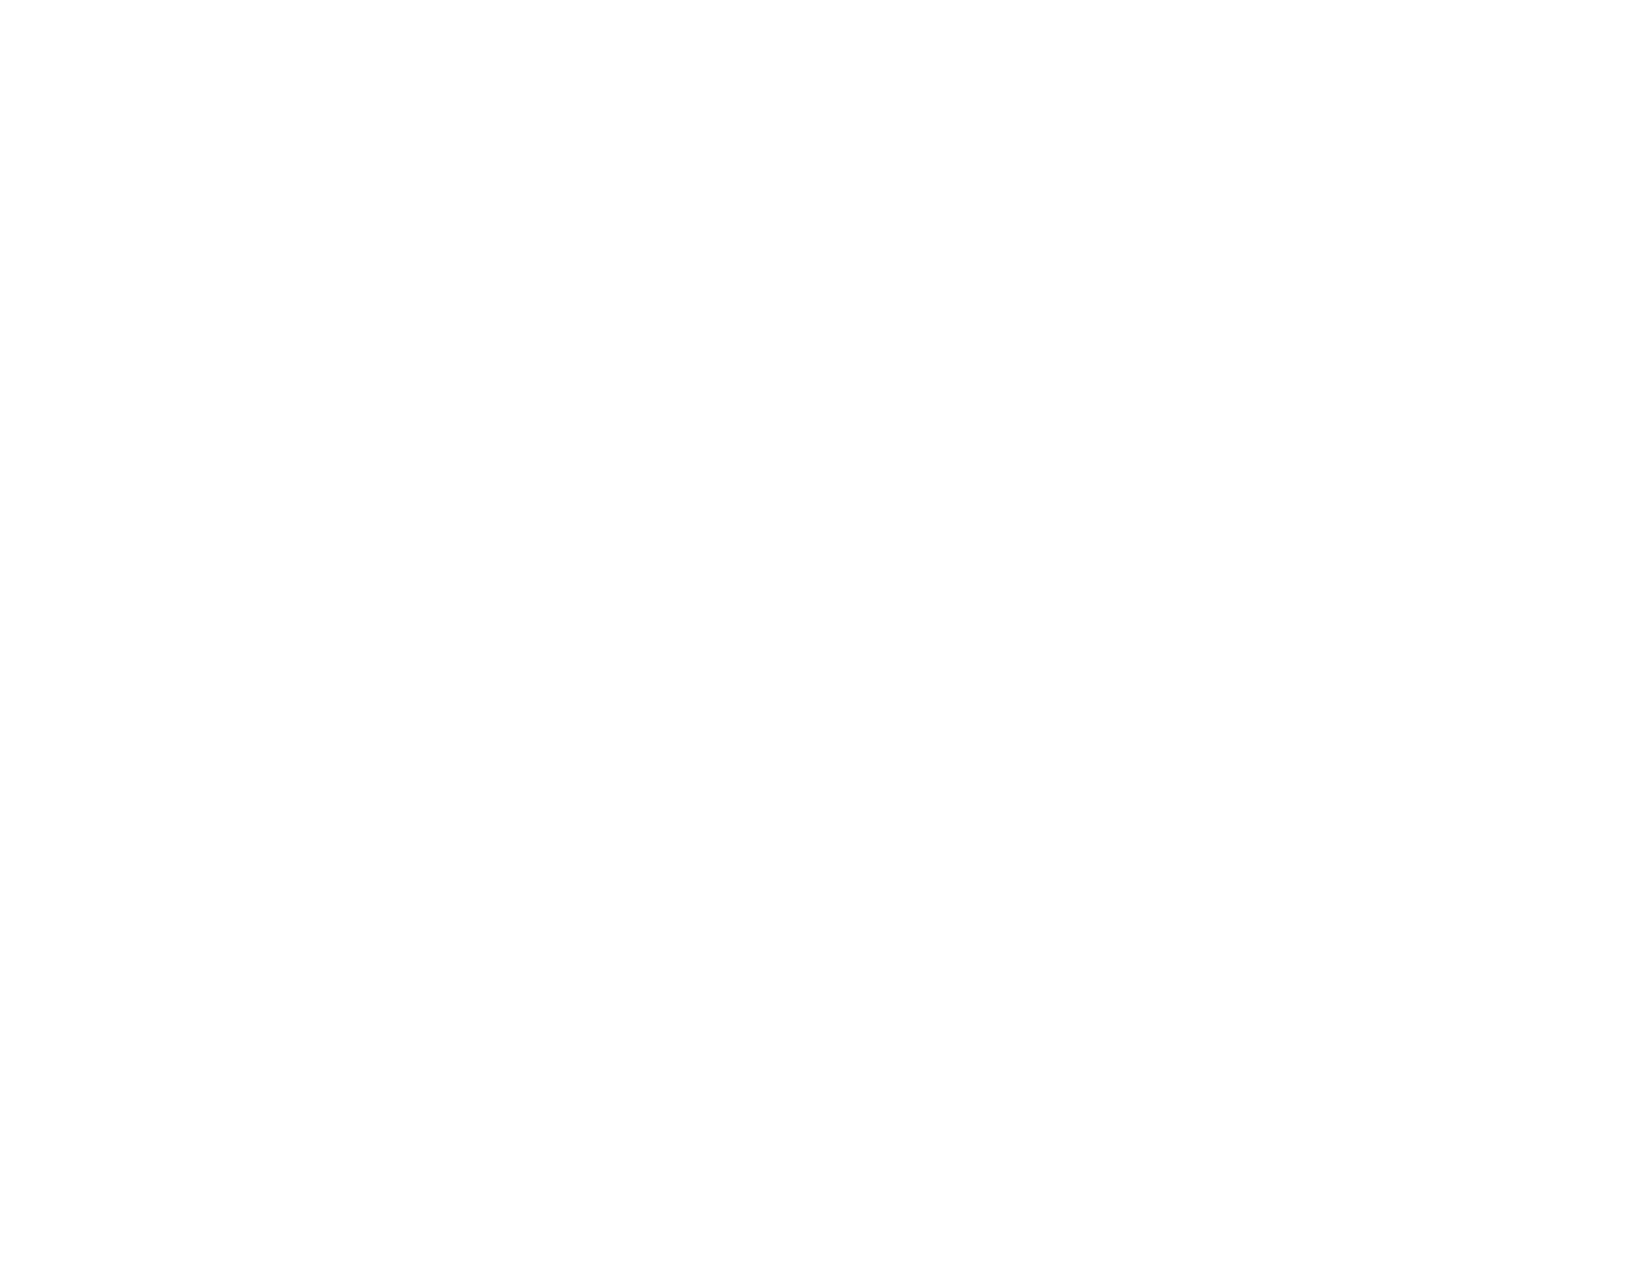 SG Südeifel